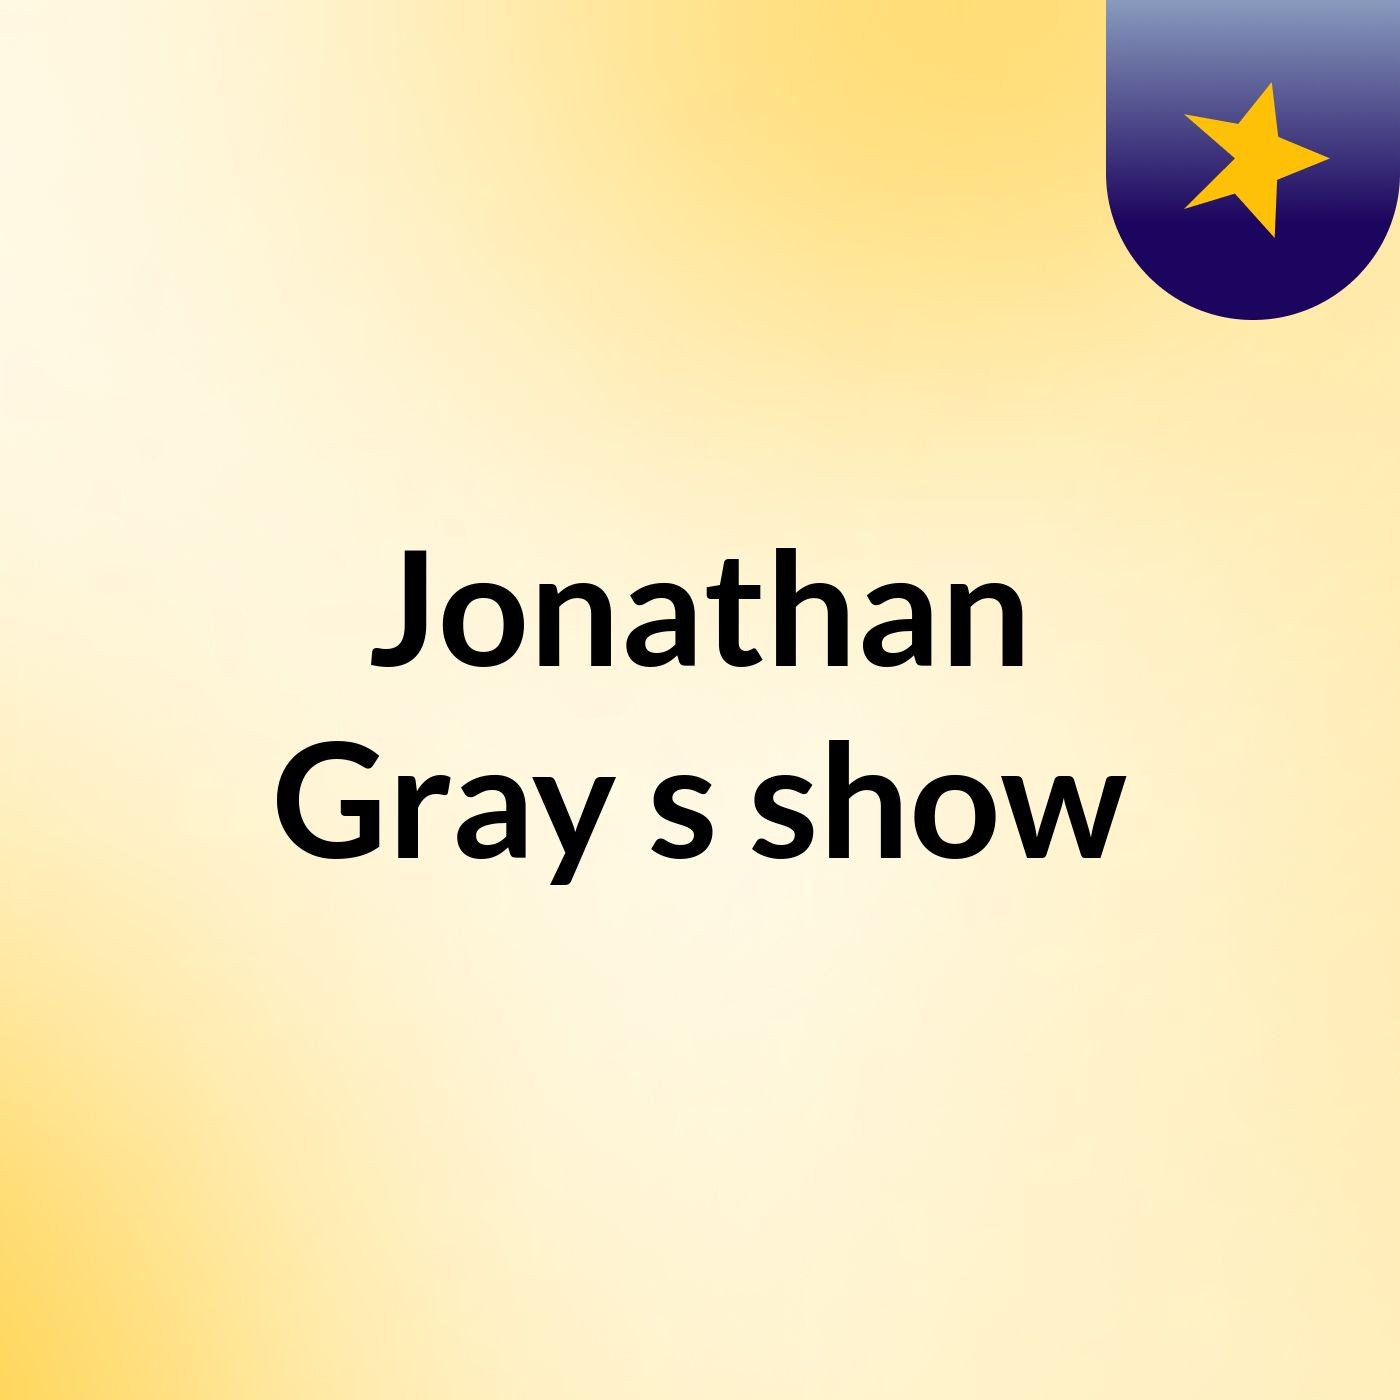 Jonathan Gray's show